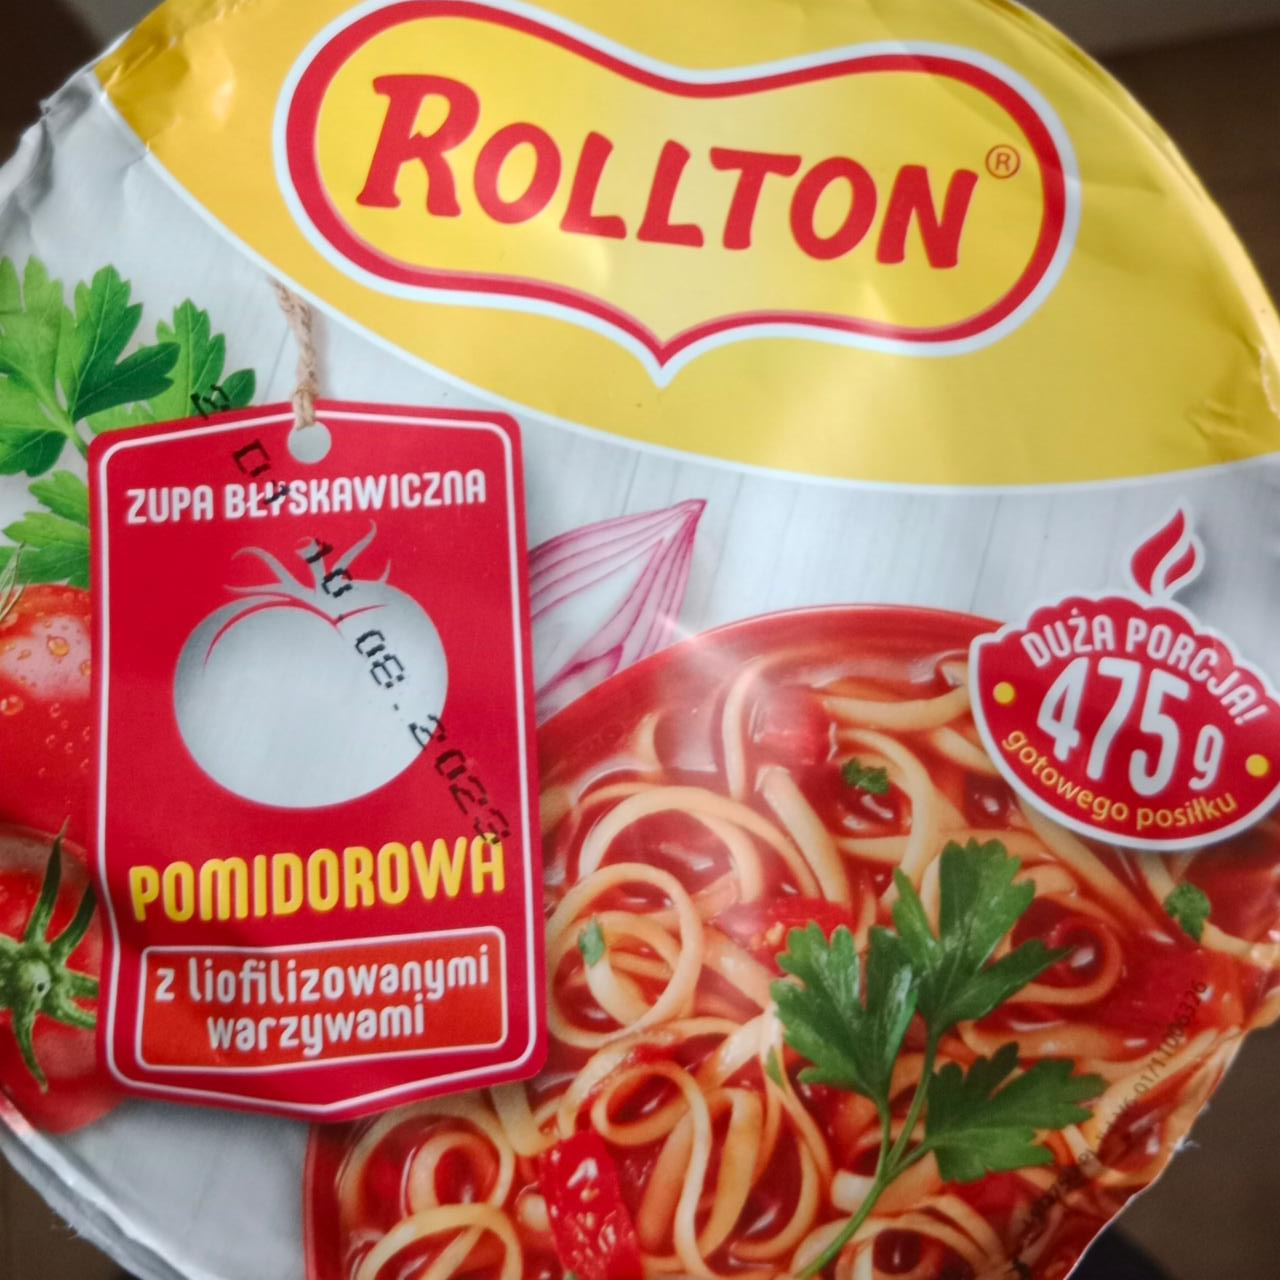 Zdjęcia - Rollton zupa błyskawiczna pomidorowa